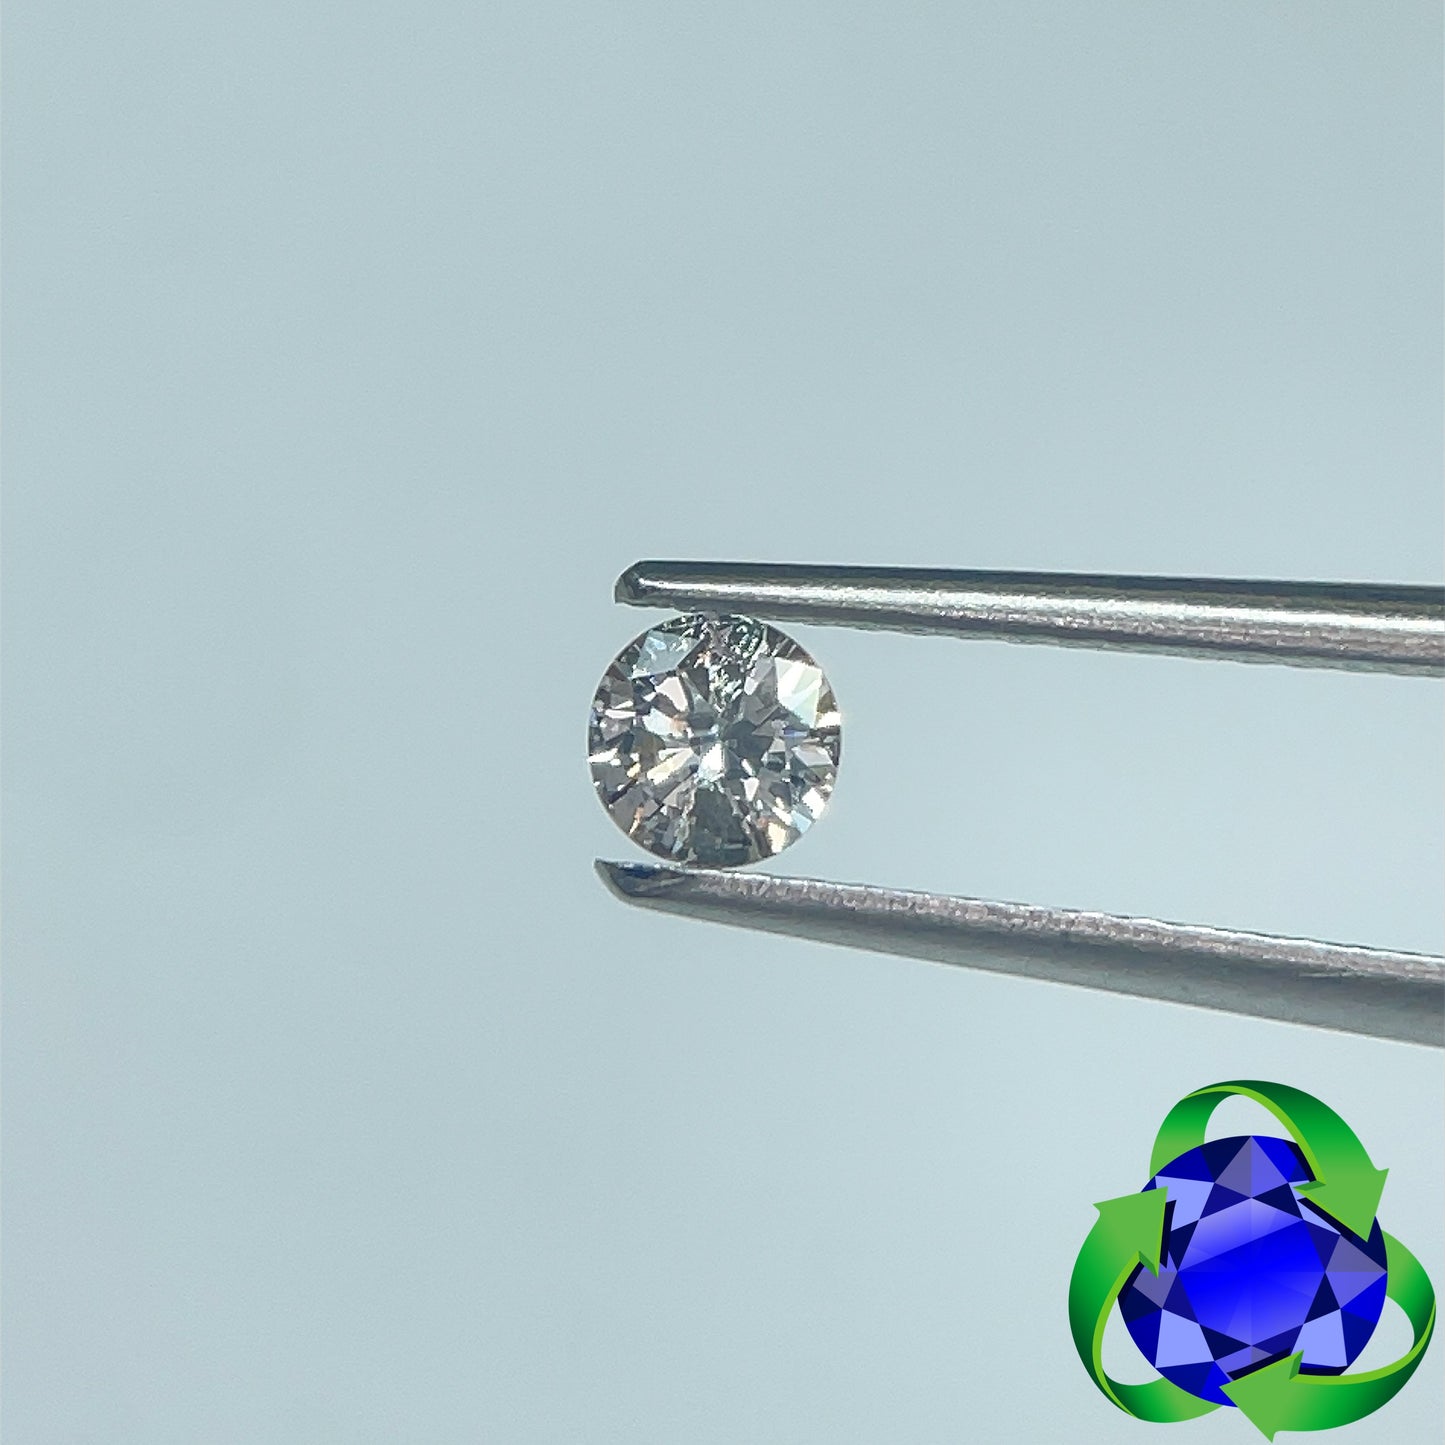 Round Brilliant cut diamond: 0.23ct - H I3